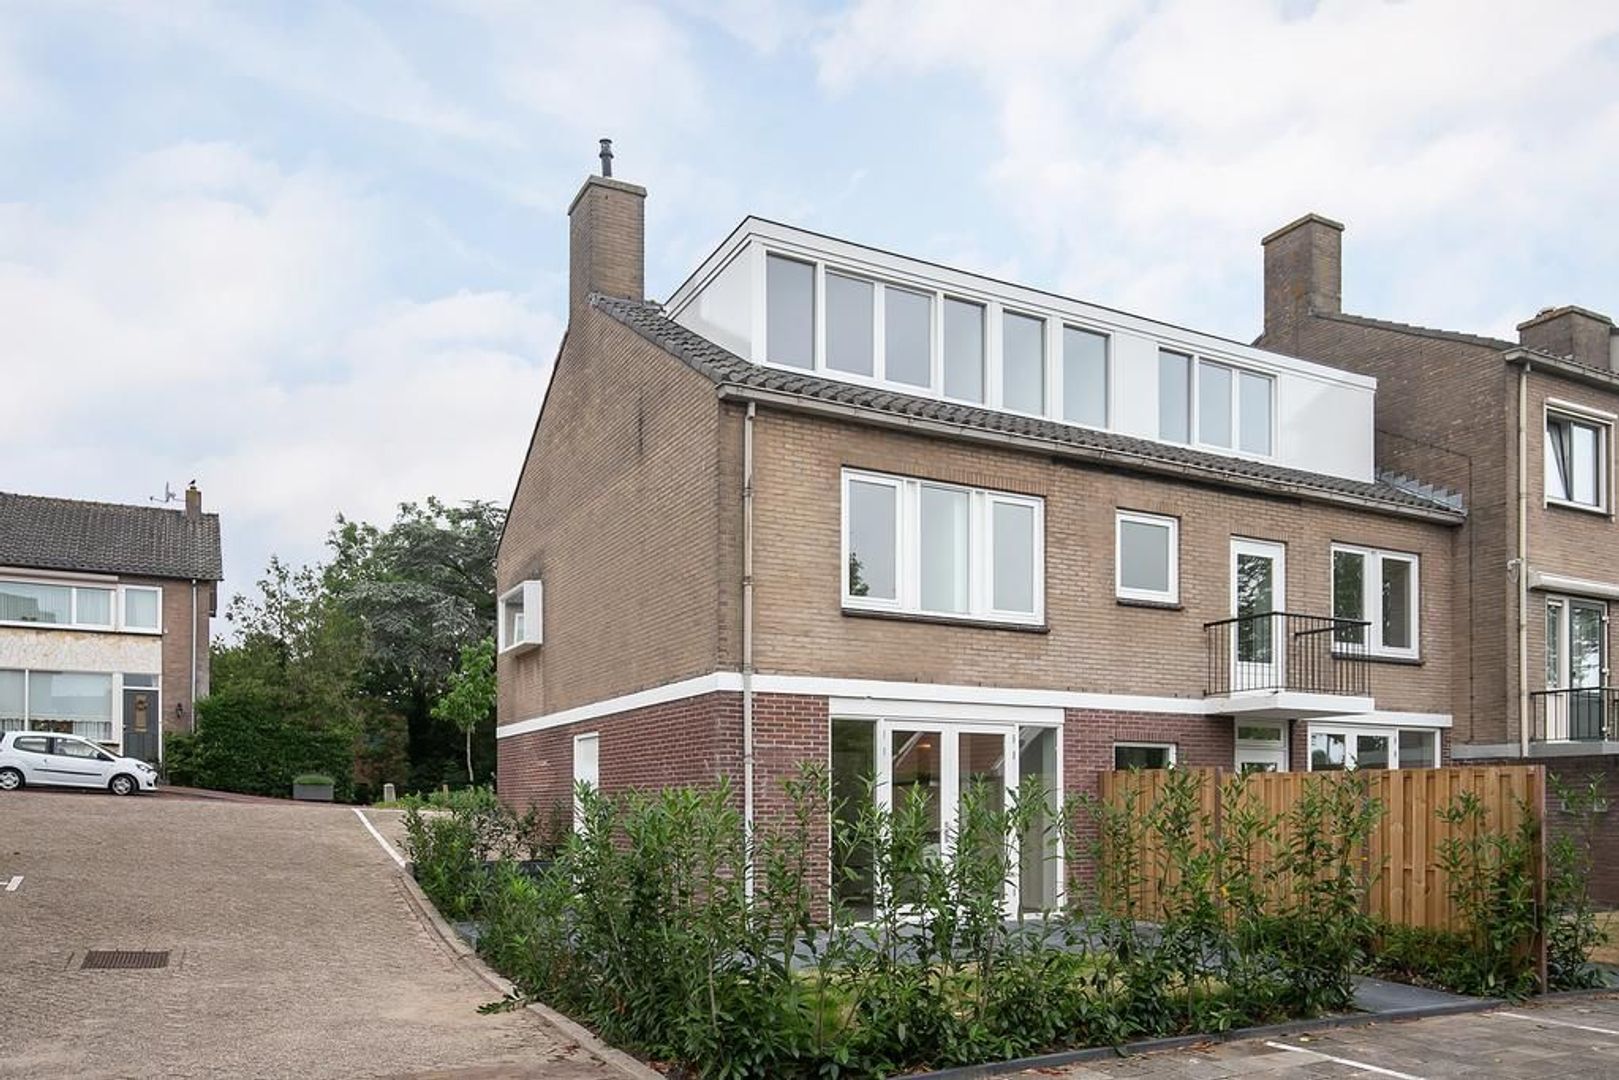 Bekijk foto 1/47 van house in Hardinxveld-Giessendam